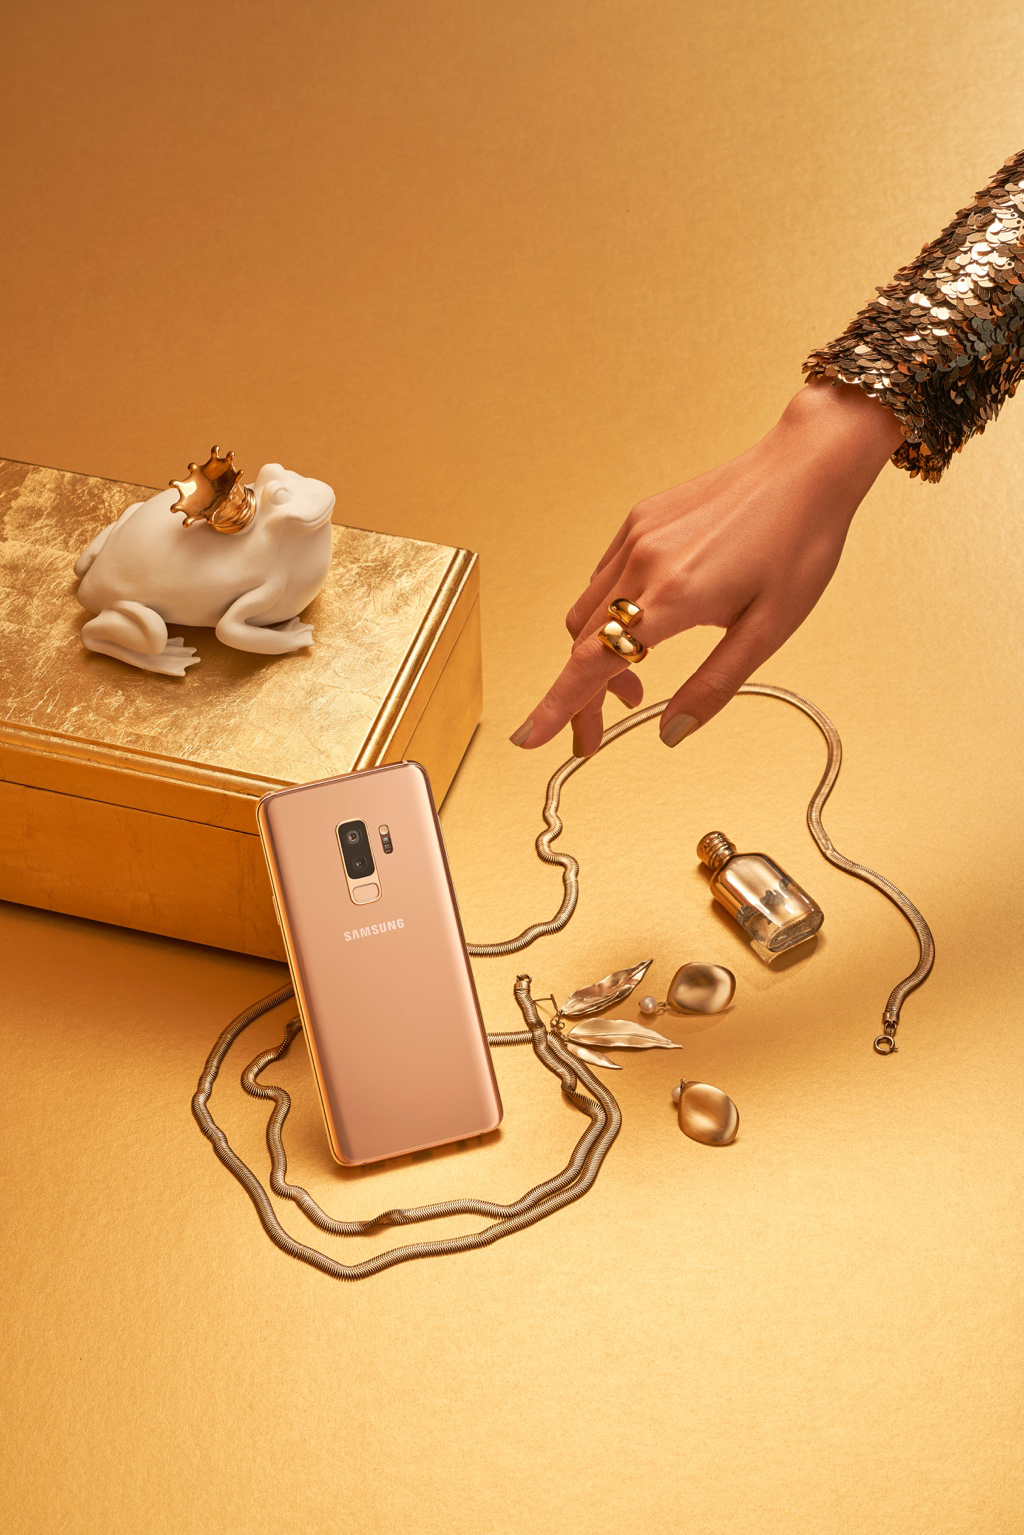 Duy mỹ và tinh tế, Galaxy S9+ phiên bản Hoàng Kim chính là đại sứ nhãn hiệu cho chủ nhân sở hữu phụ kiện sang chất này. Điều này lý giải vì sao chỉ trong thời gian ngắn, Galaxy S9+ đã chiếm vị trí quan trọng trong “kho báu” sắc vàng hoàng kim của các tín đồ thời trang